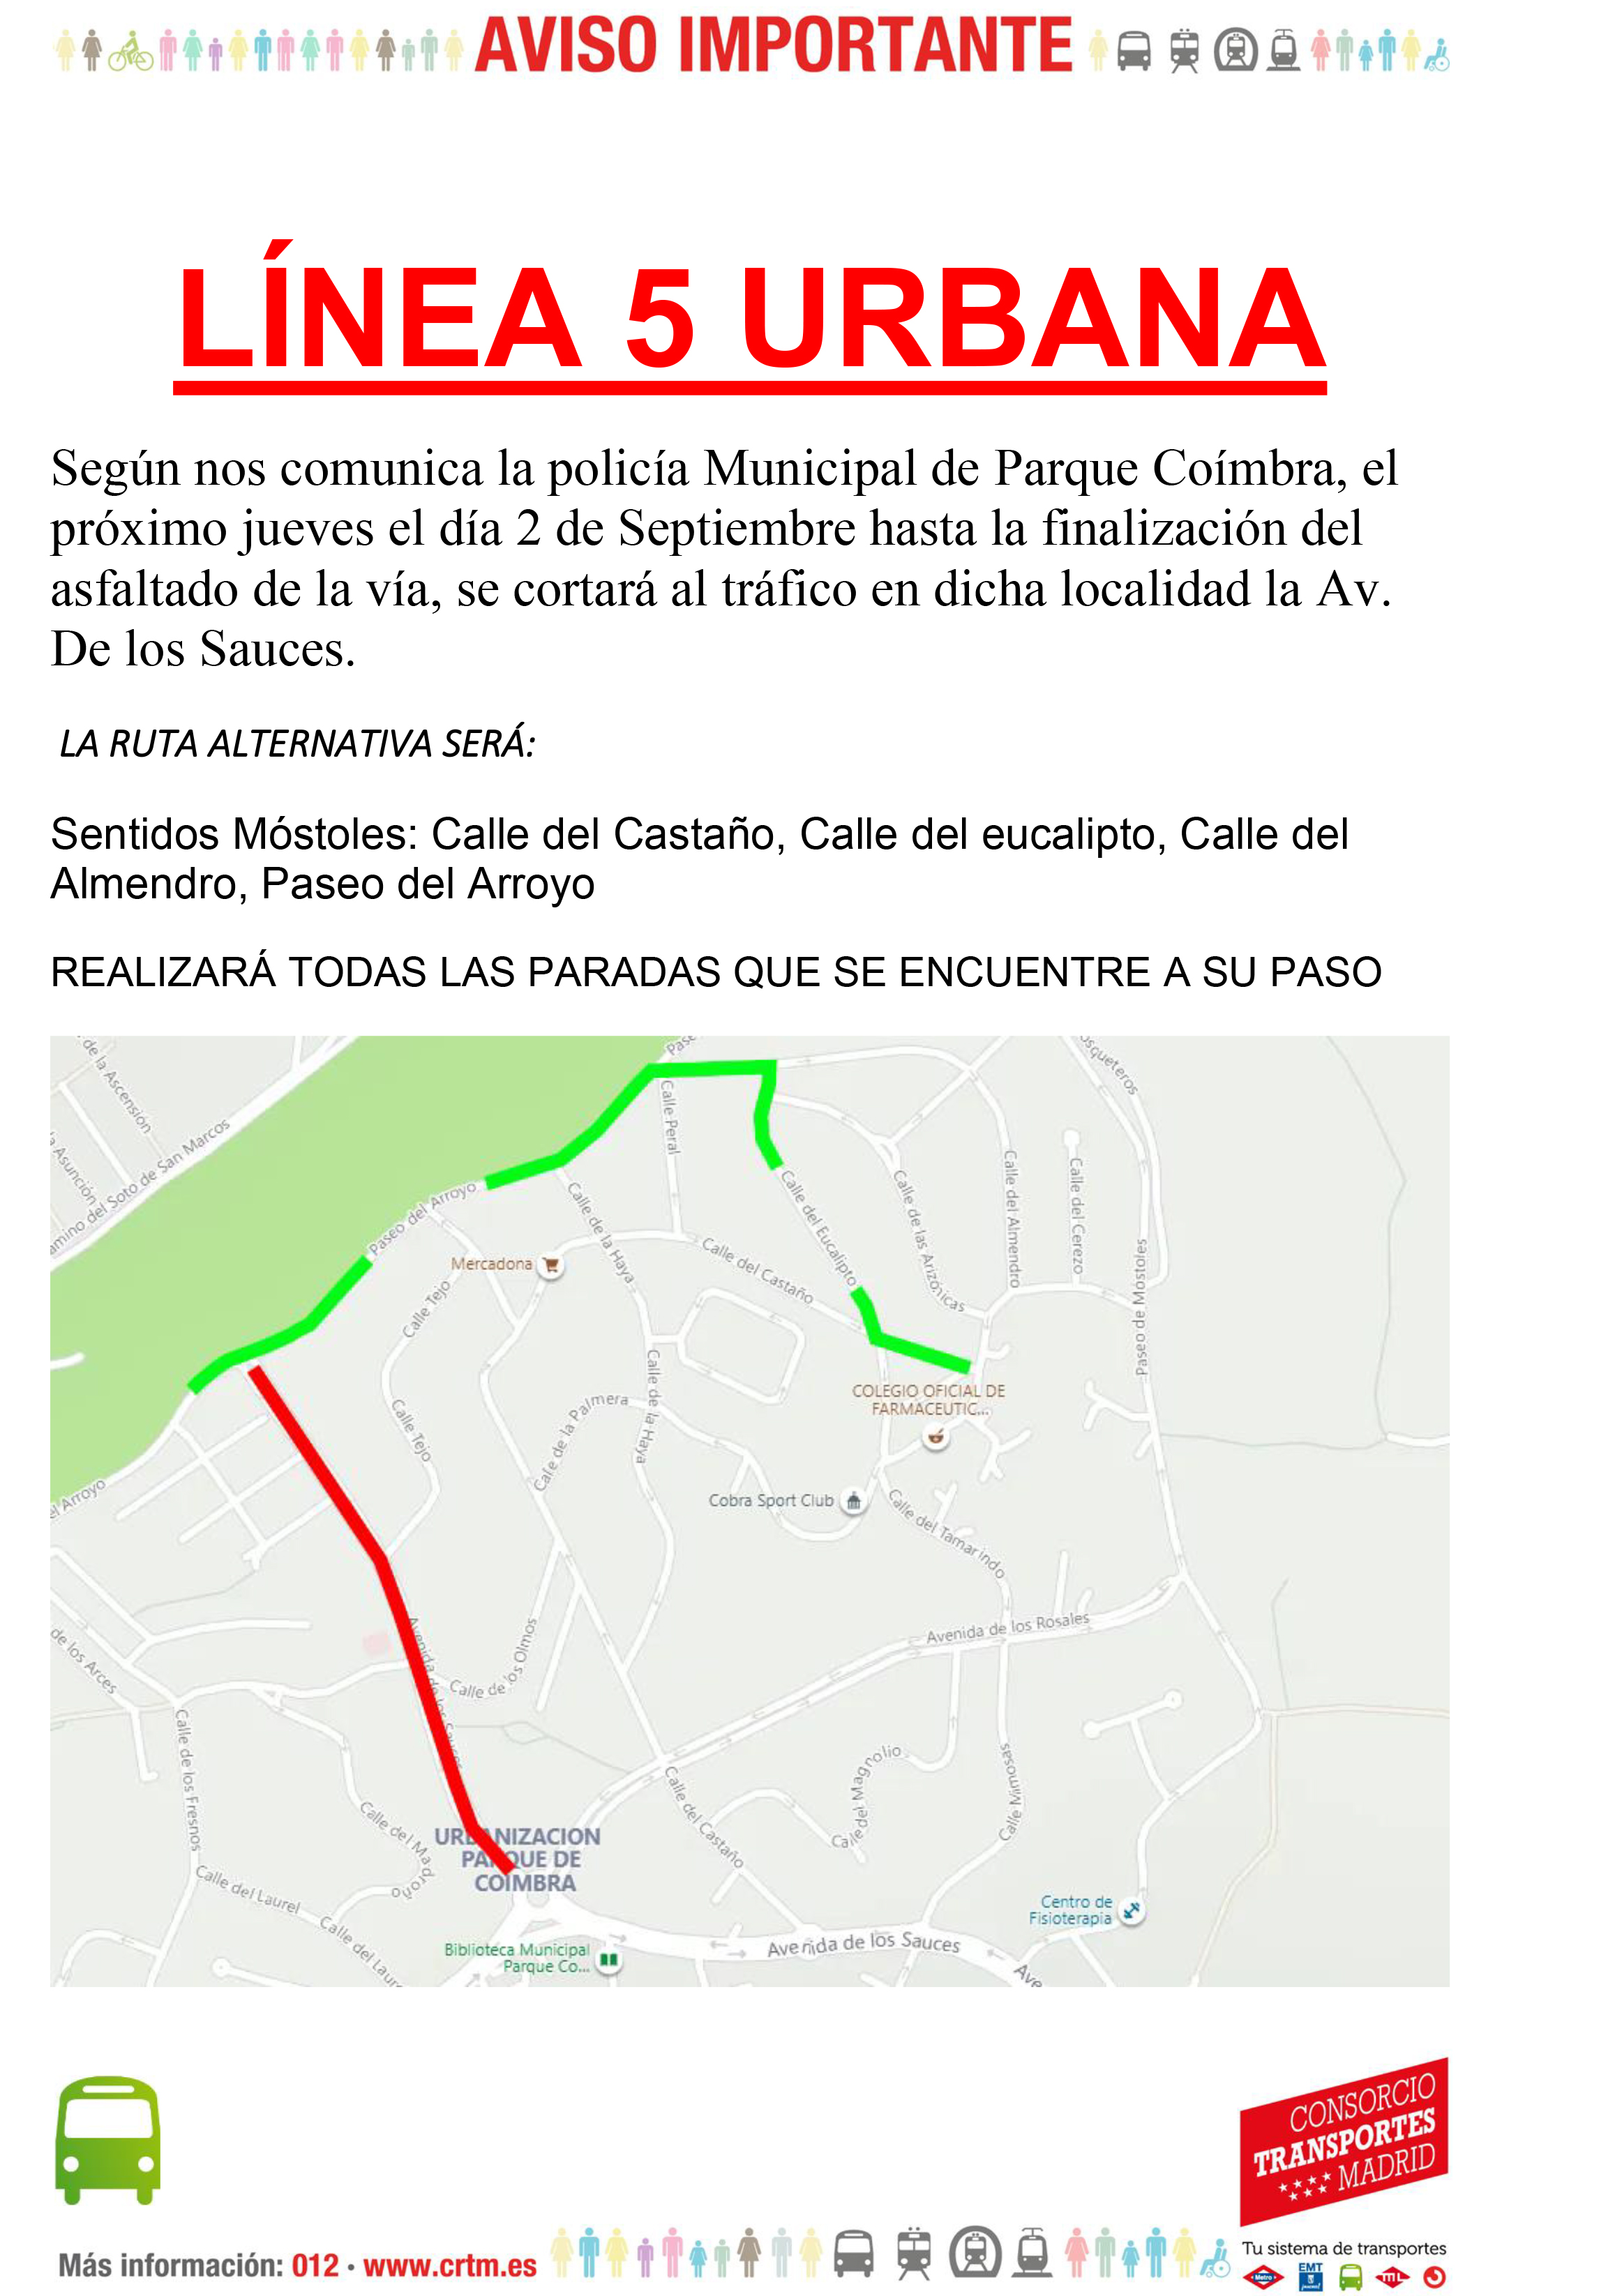 Plan de Asfaltado en Parque Coimbra Modificación Línea 5 Urbana p